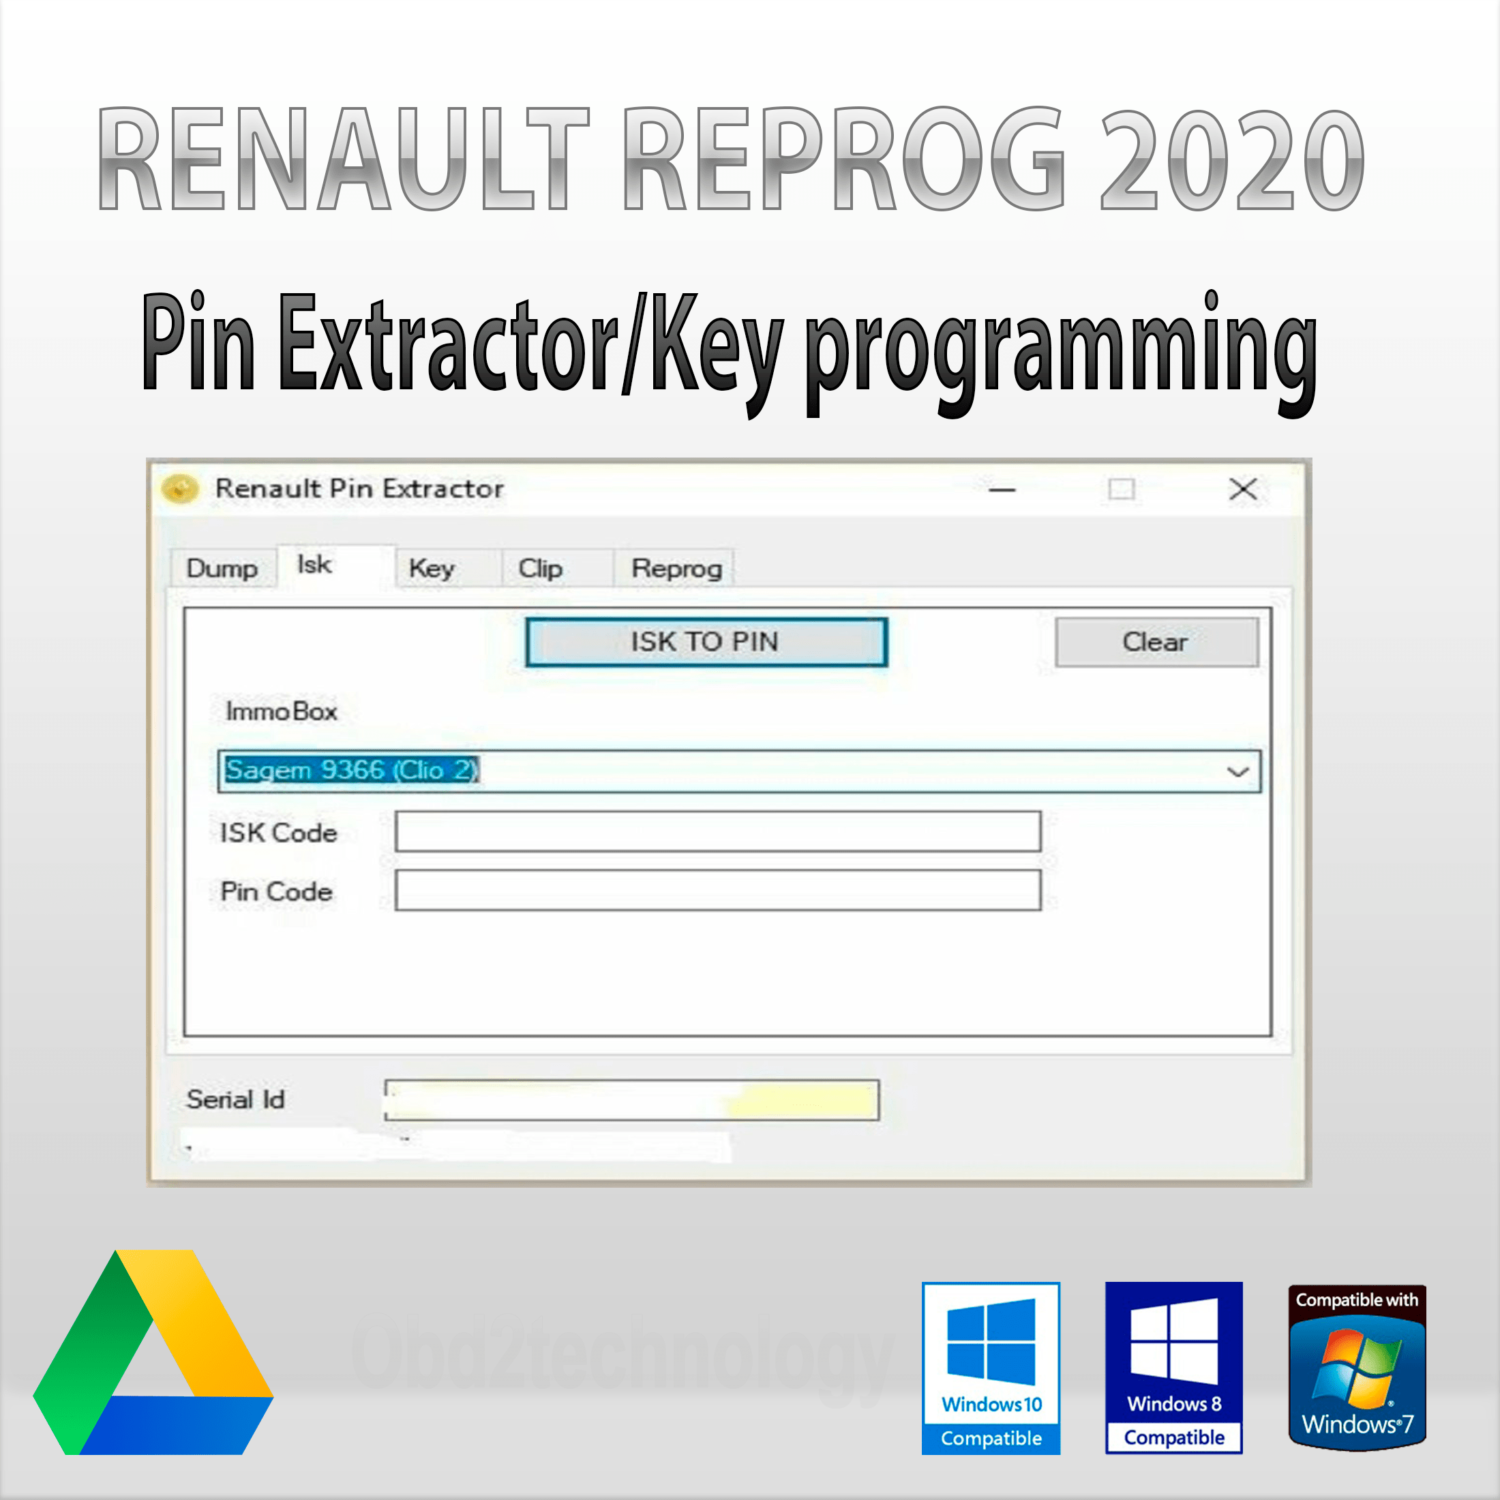 renault reprog 2020 extractor de pines/programa de programación de llaves para vehículos renault/dacia descarga instantánea